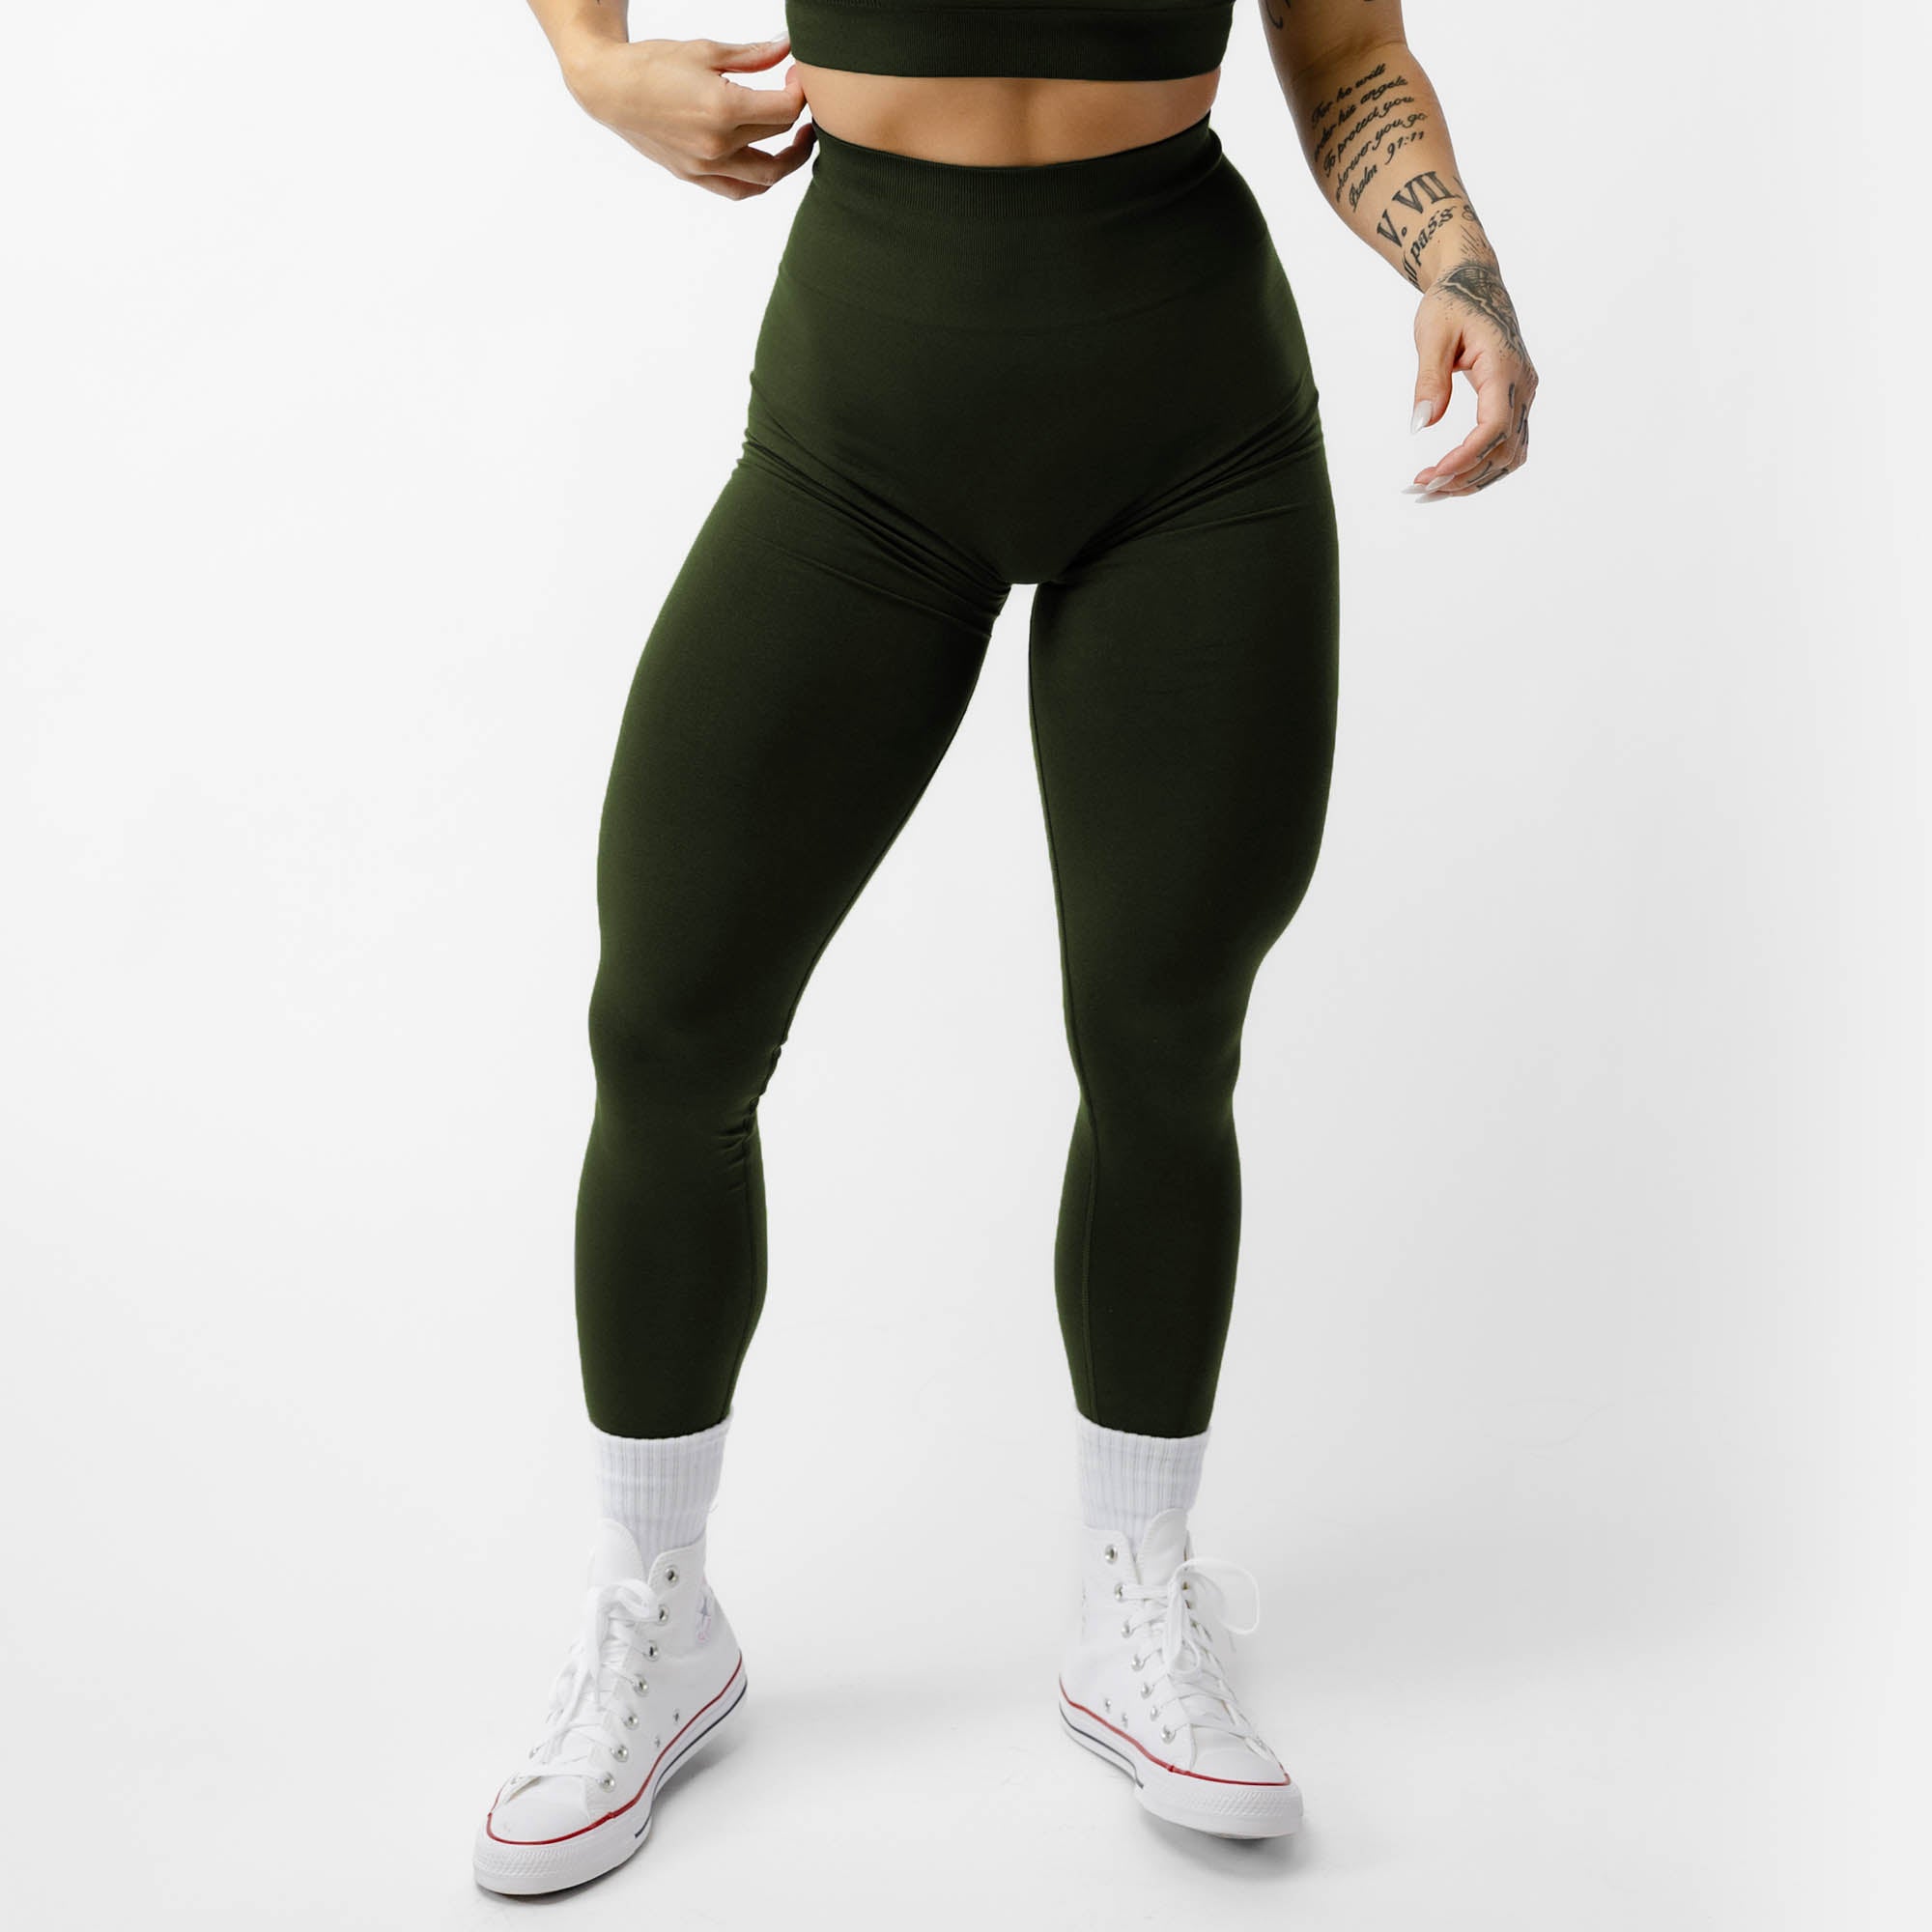 http://www.gymreapers.com/cdn/shop/files/legacy-leggings-ranger-green-main.jpg?v=1707844570&width=2048